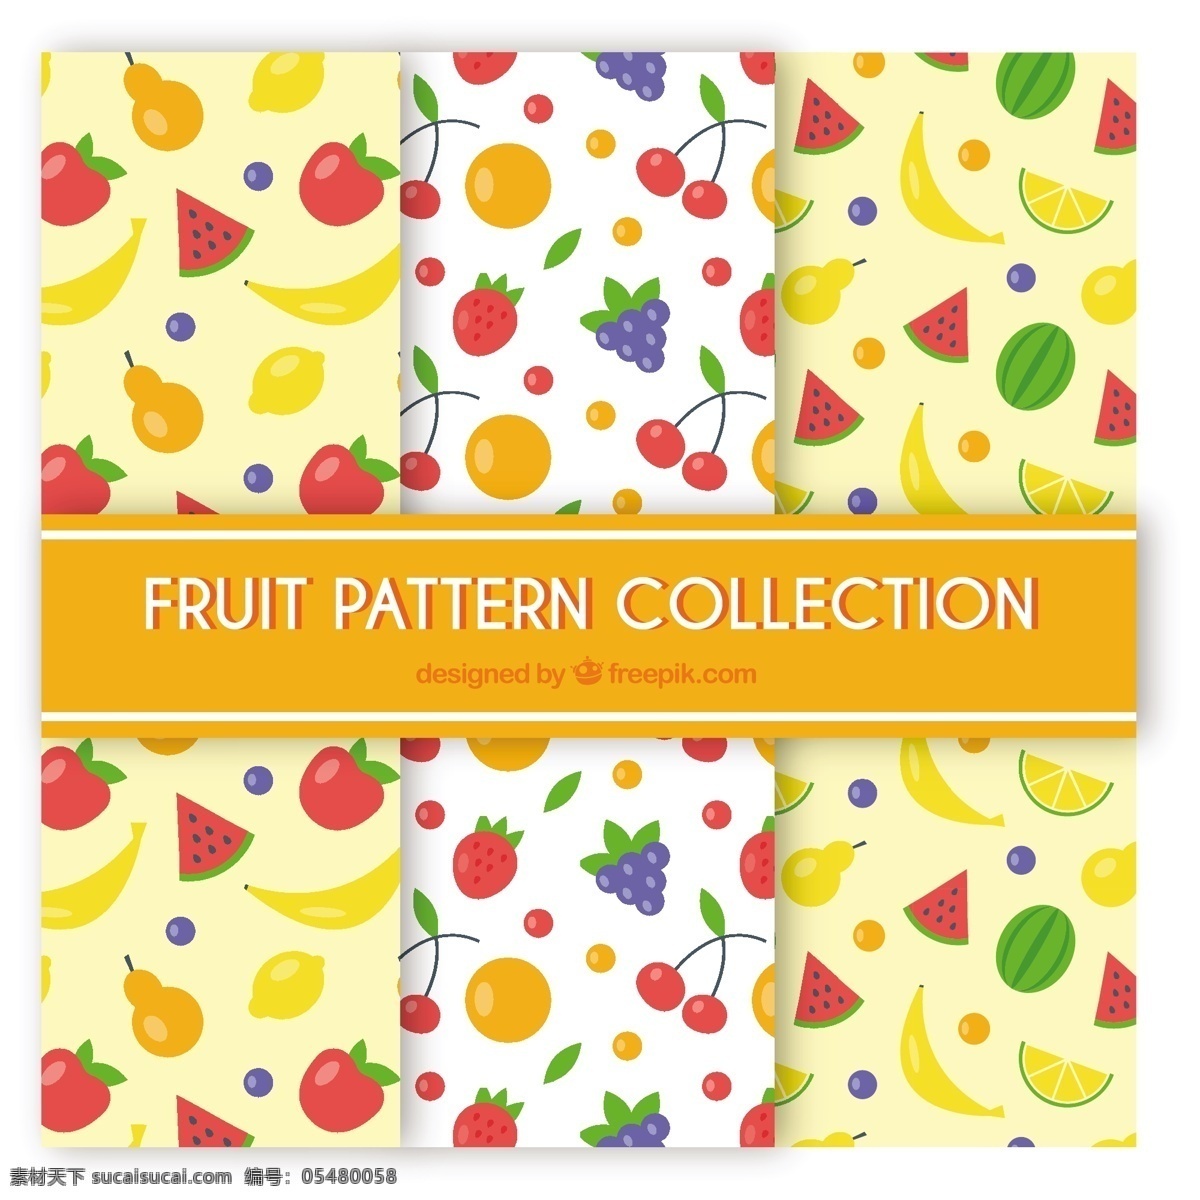 平面设计 中 三 种 形态 背景 图案 食物 夏季 水果 颜色 橙色 苹果 平板 装饰 丰富多彩 橙色背景 无缝模式 天然 香蕉 健康